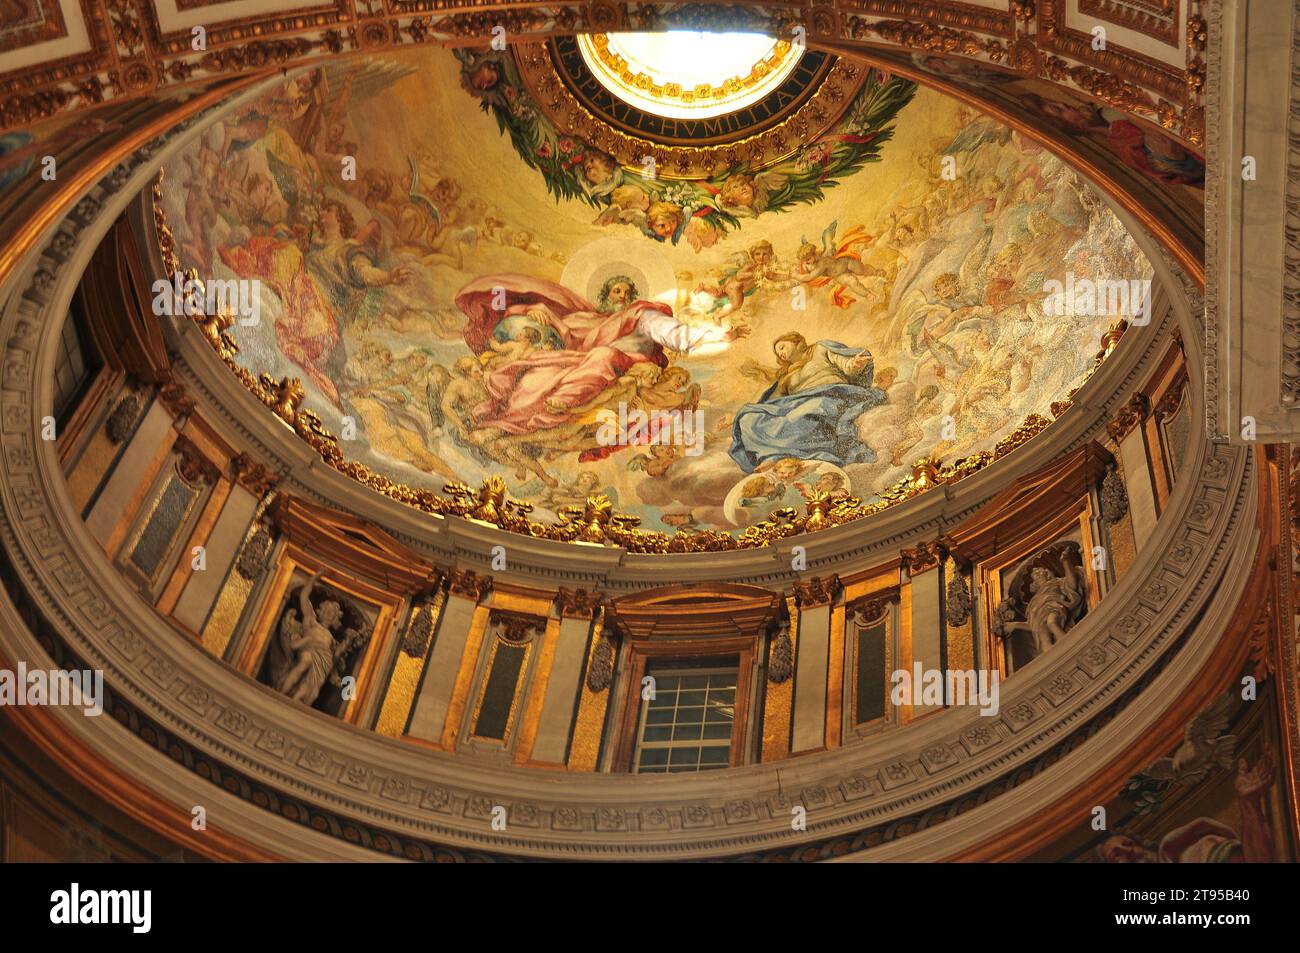 Présentation Chapel Dome, St. Peters BasiIica, Rome Italie. Banque D'Images